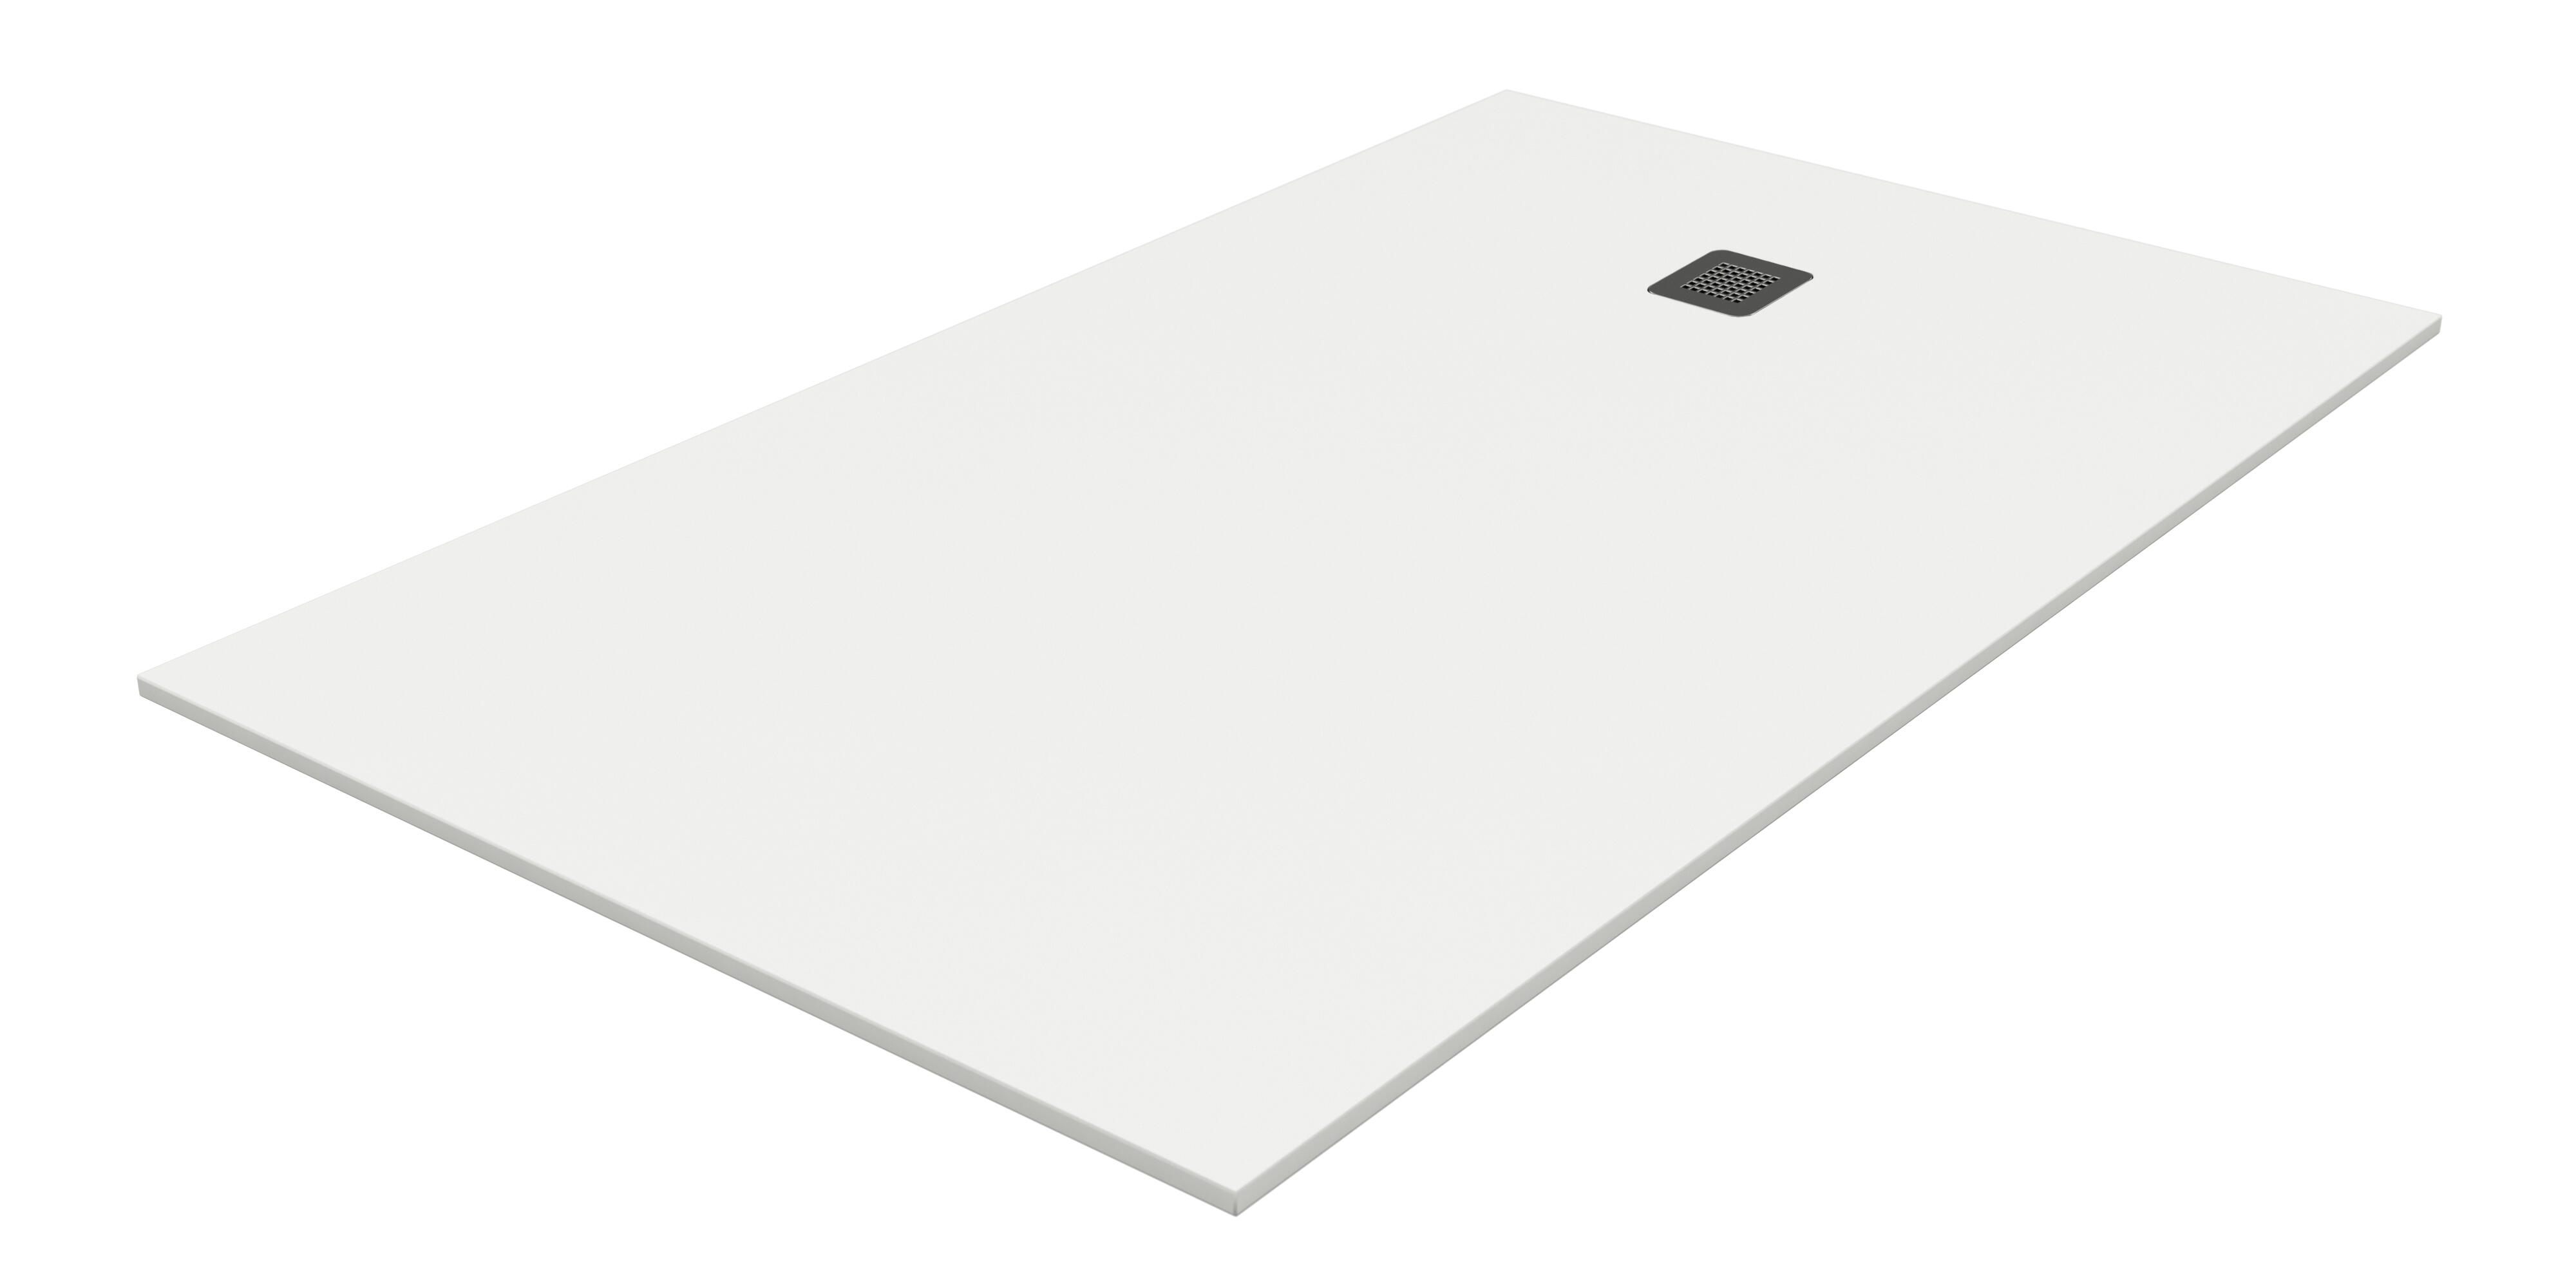 Plato de ducha pietra 190x70 cm blanco